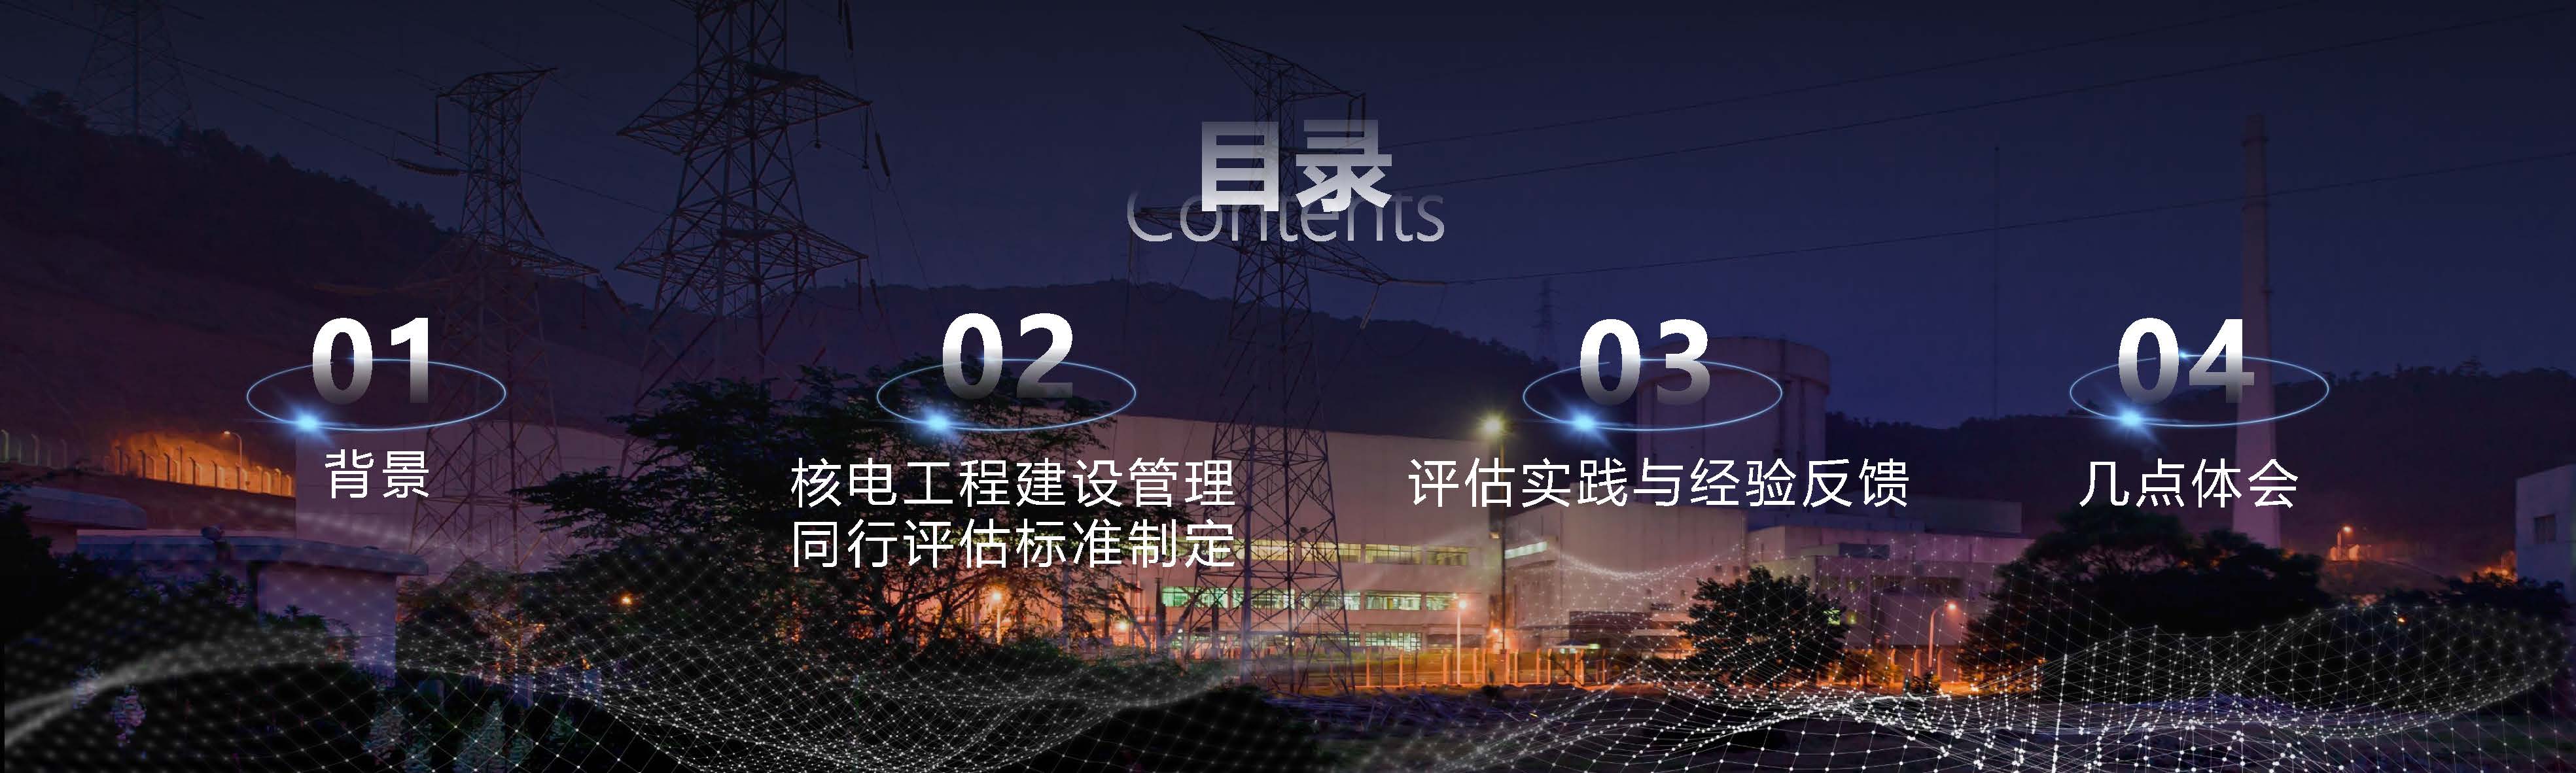 03 赵成昆 20201106核电建设同行评估与经验交流1.0 (1)_页面_03.jpg